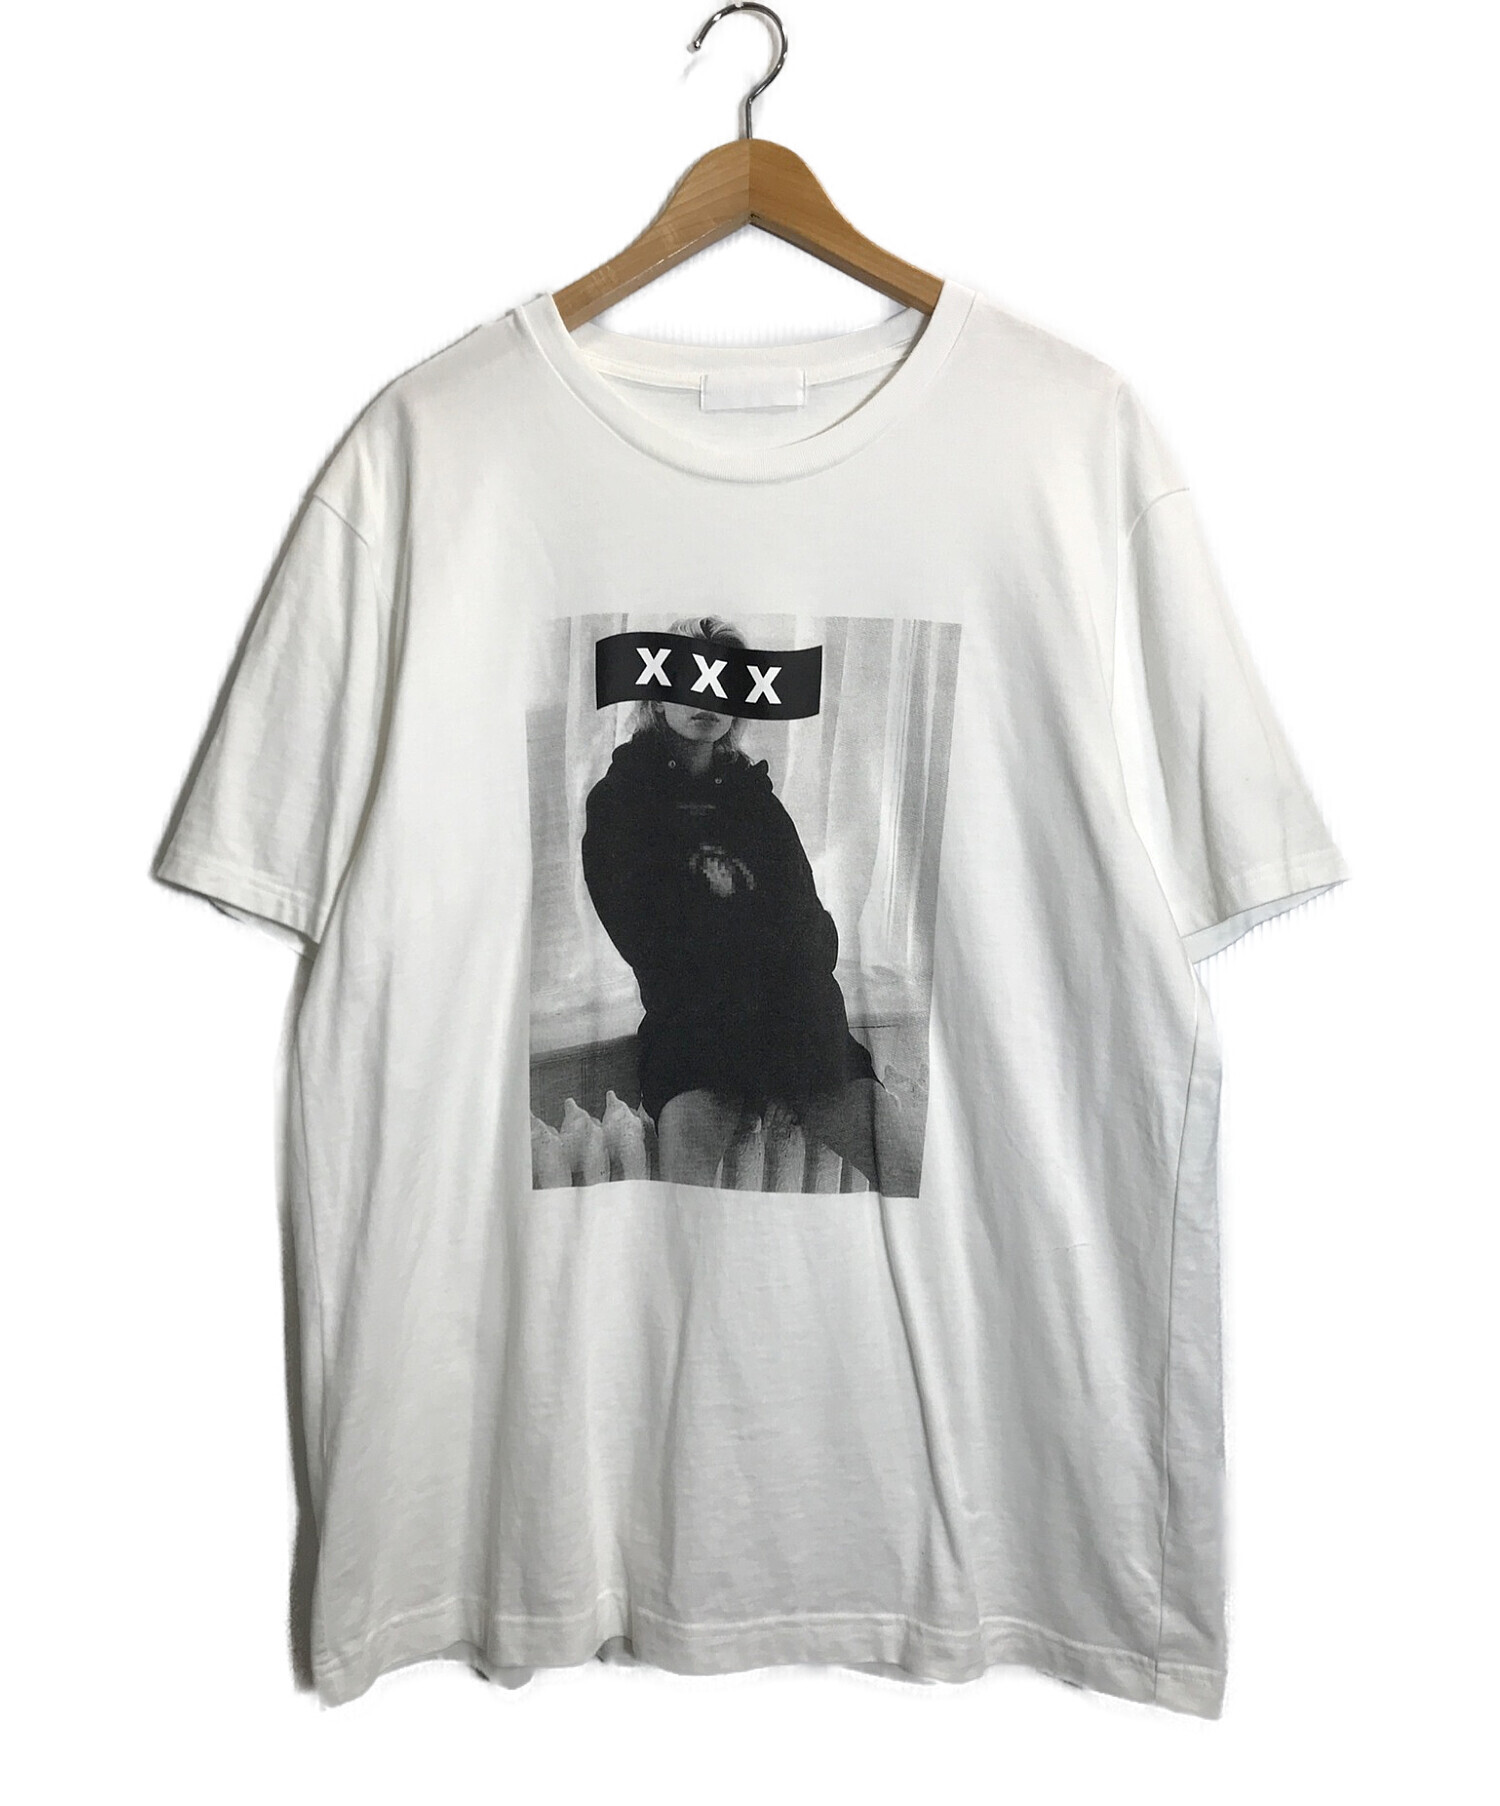 GOD SELECTION XXX (ゴットセレクショントリプルエックス) プリントTシャツ ホワイト サイズ:XL